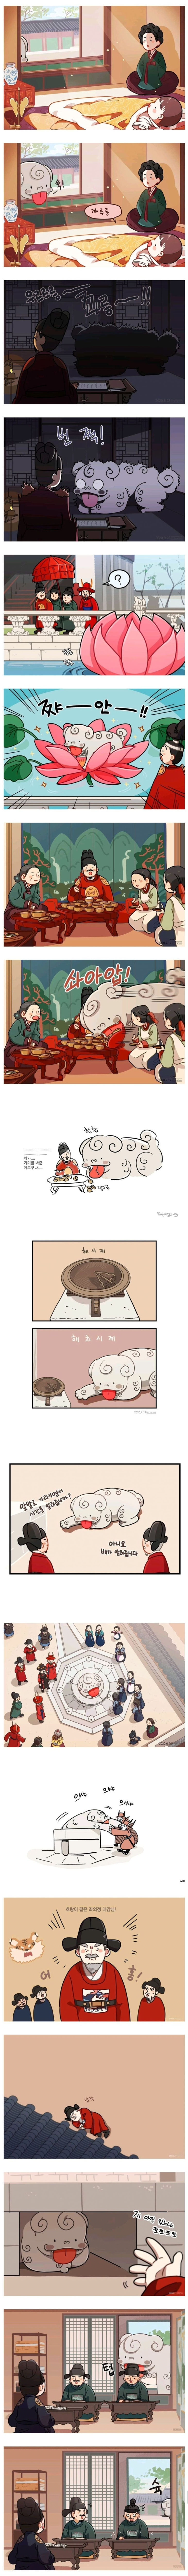 nokbeon.net-경북궁의 수호신 해치 만화-5번 이미지